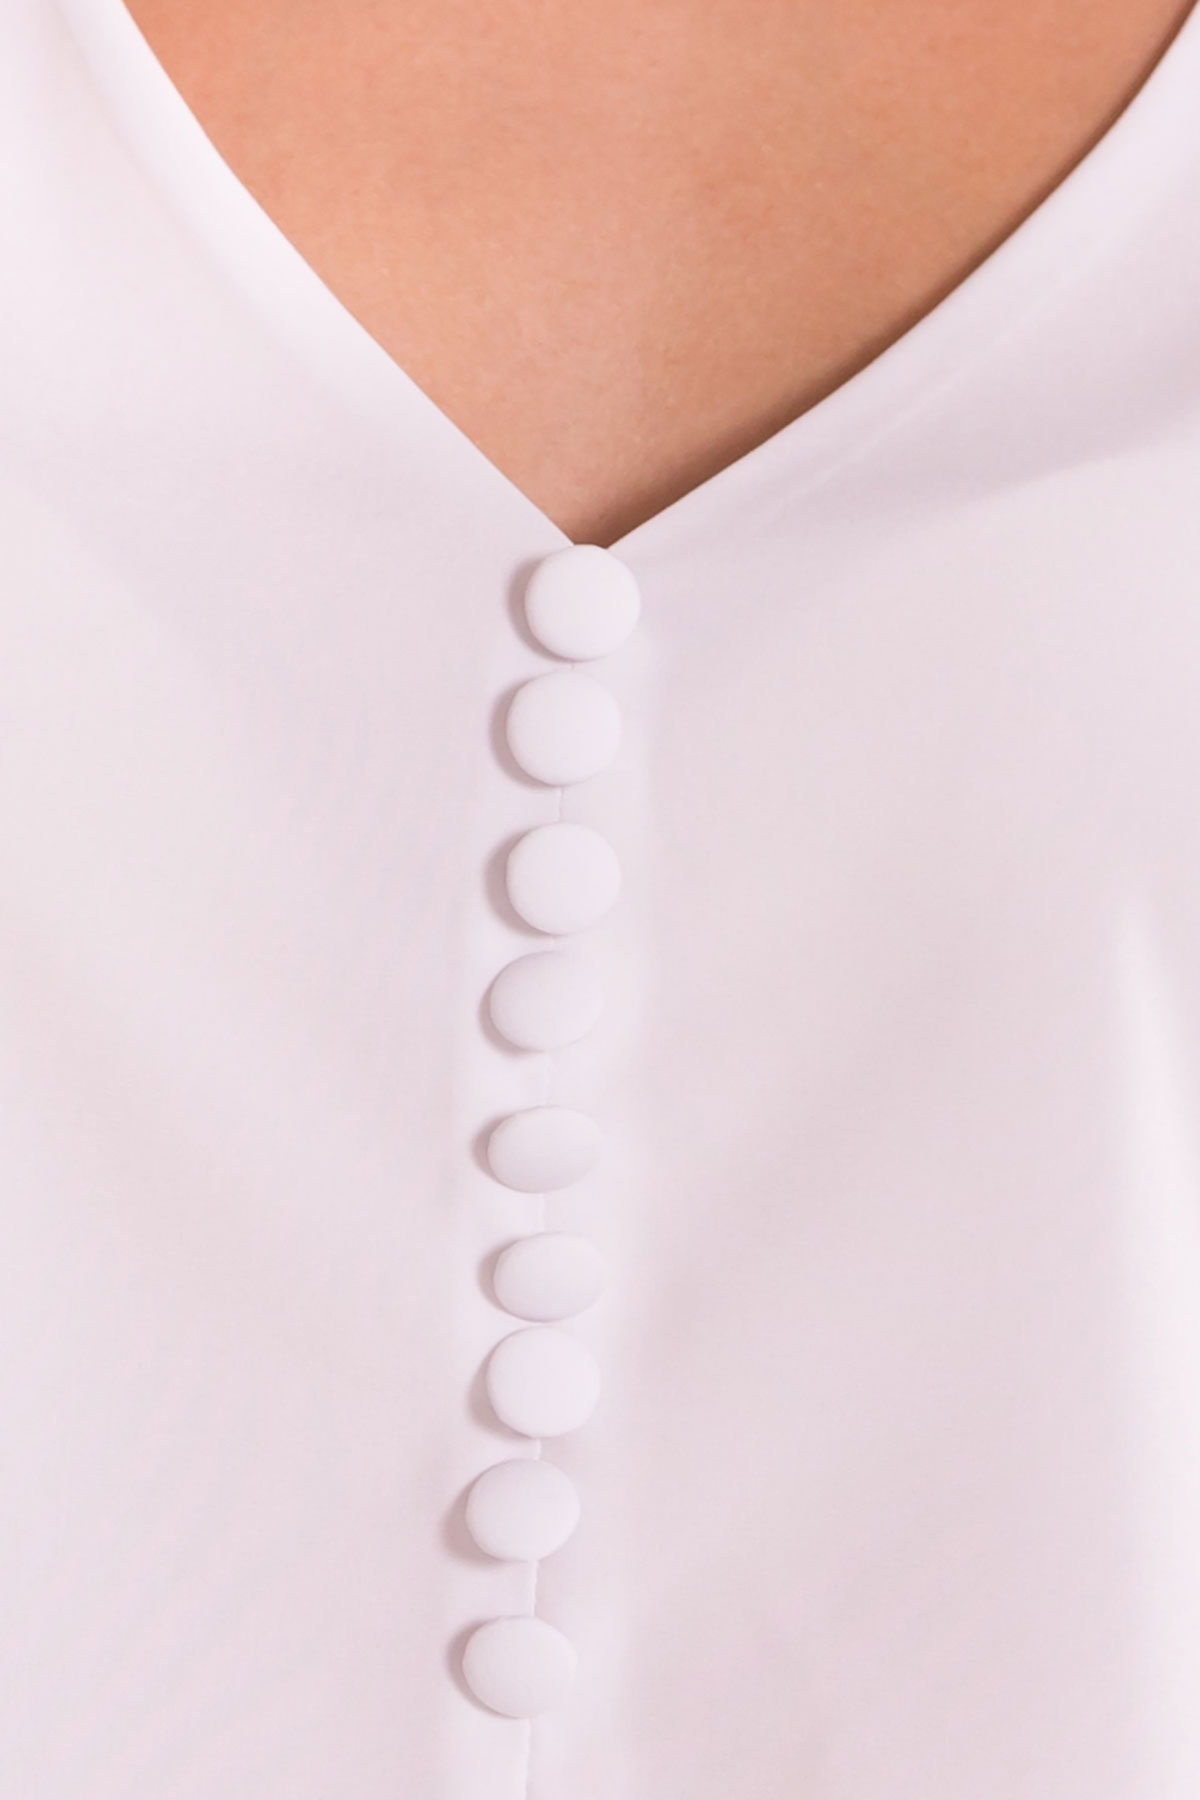 Блузка с v-образным вырезом Аиша 7648 АРТ. 43572 Цвет: Белый - фото 7, интернет магазин tm-modus.ru